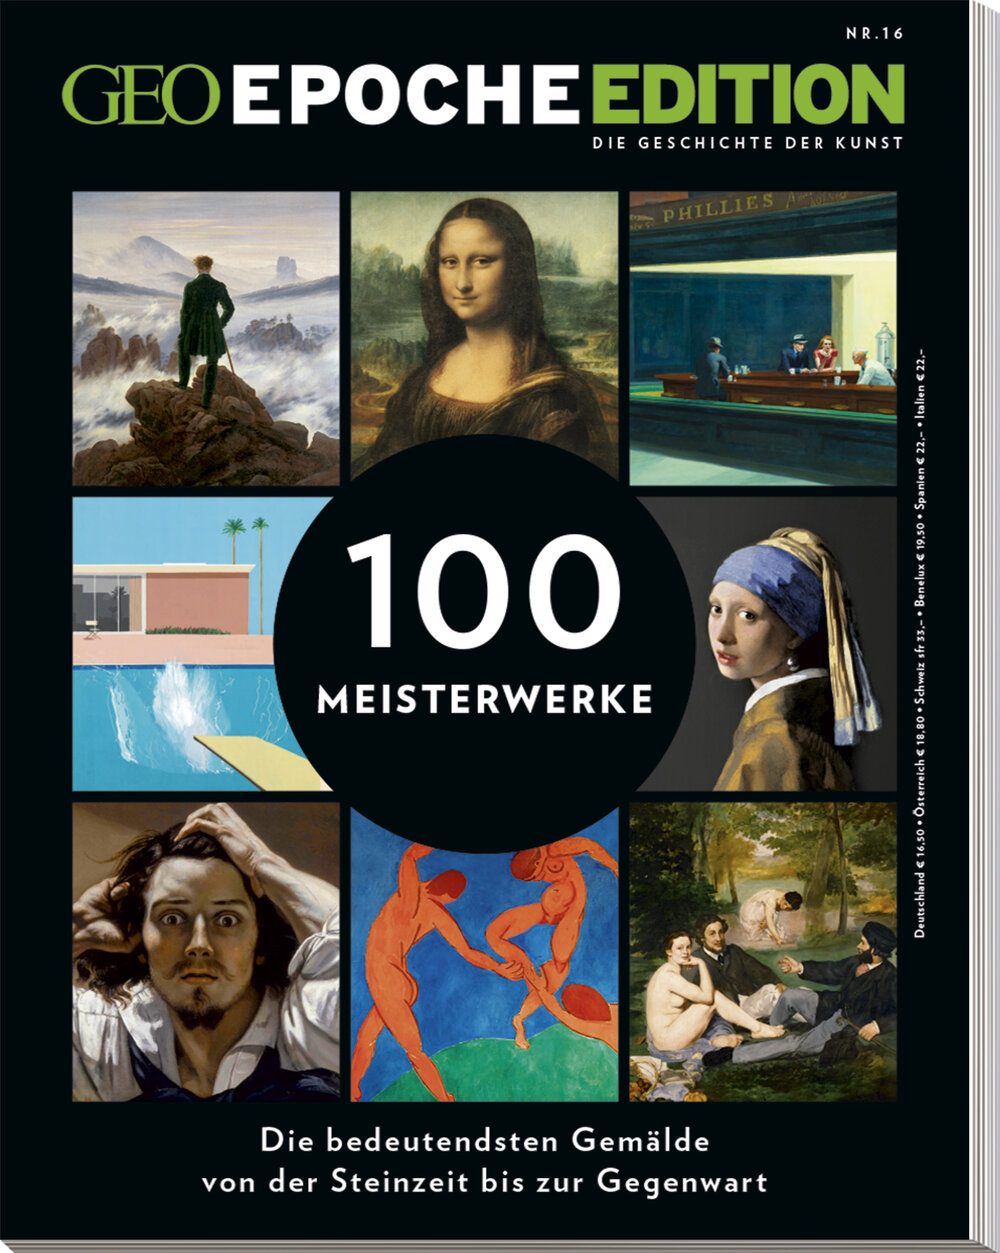 GEO EPOCHE EDITION „100 Meisterwerke“